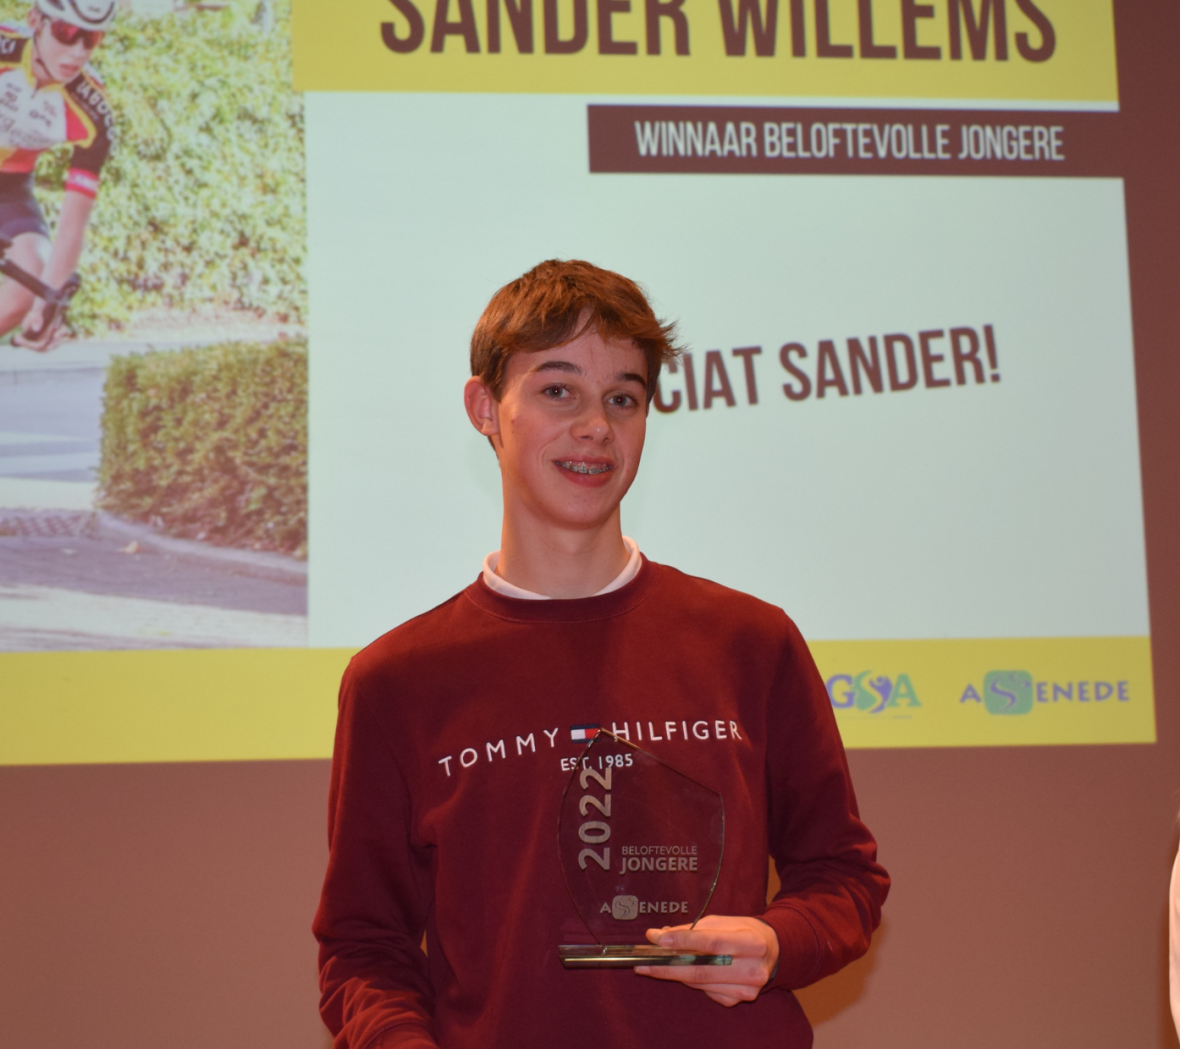 Sander Willems